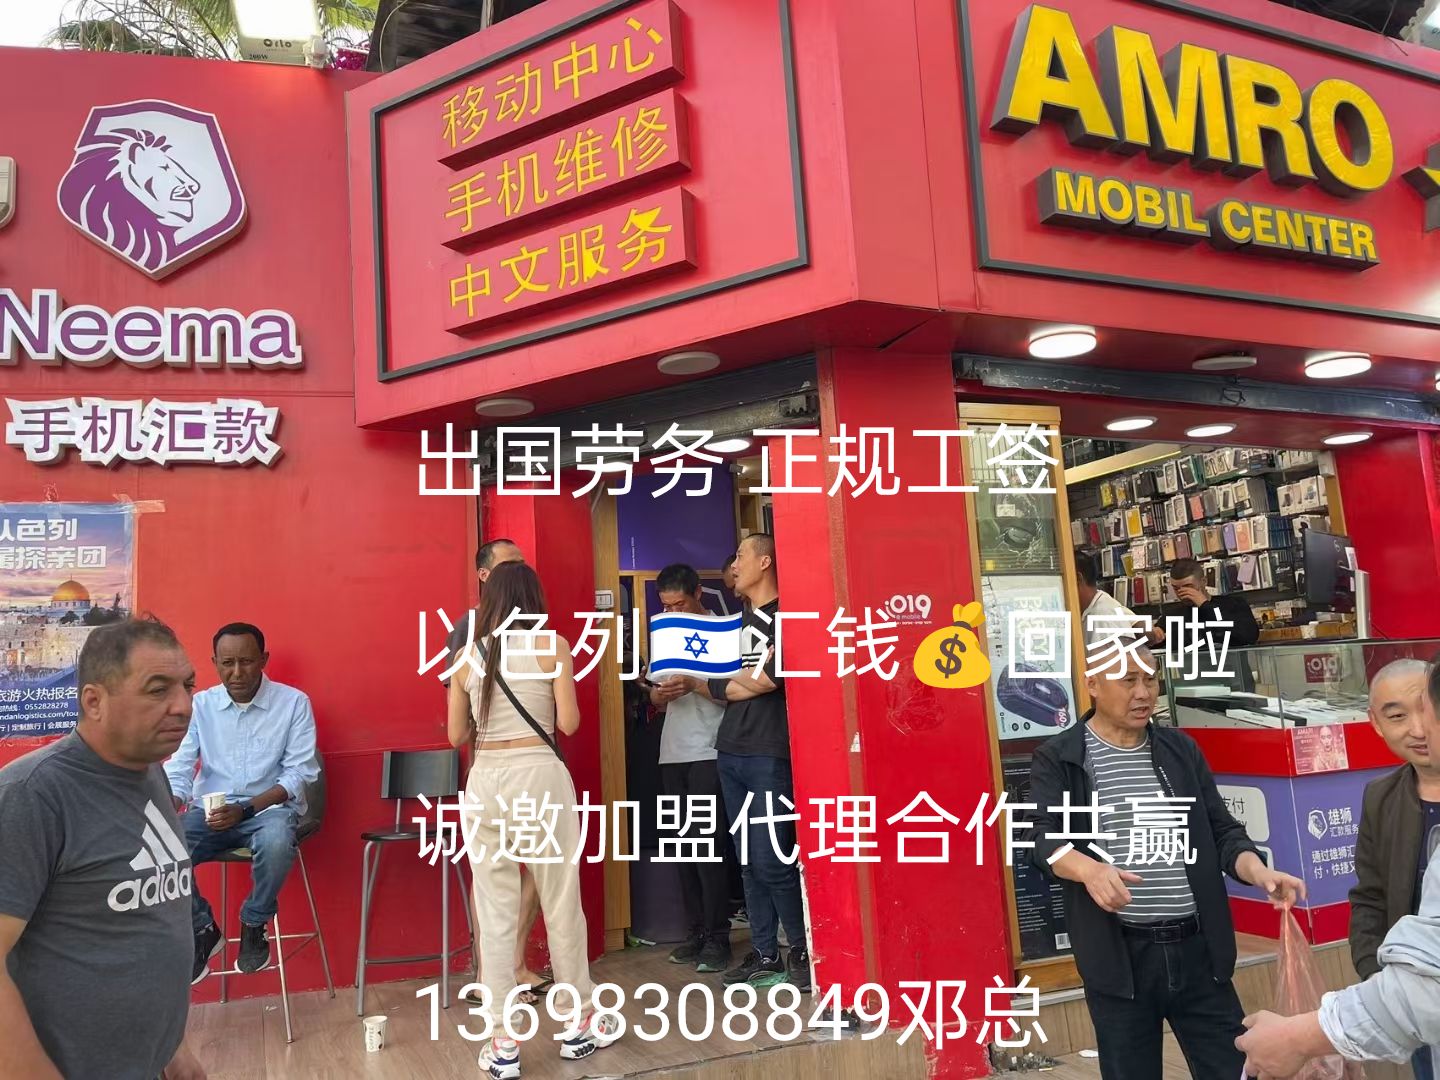 远境劳务西藏出国劳务保签超市理货员员合法打工